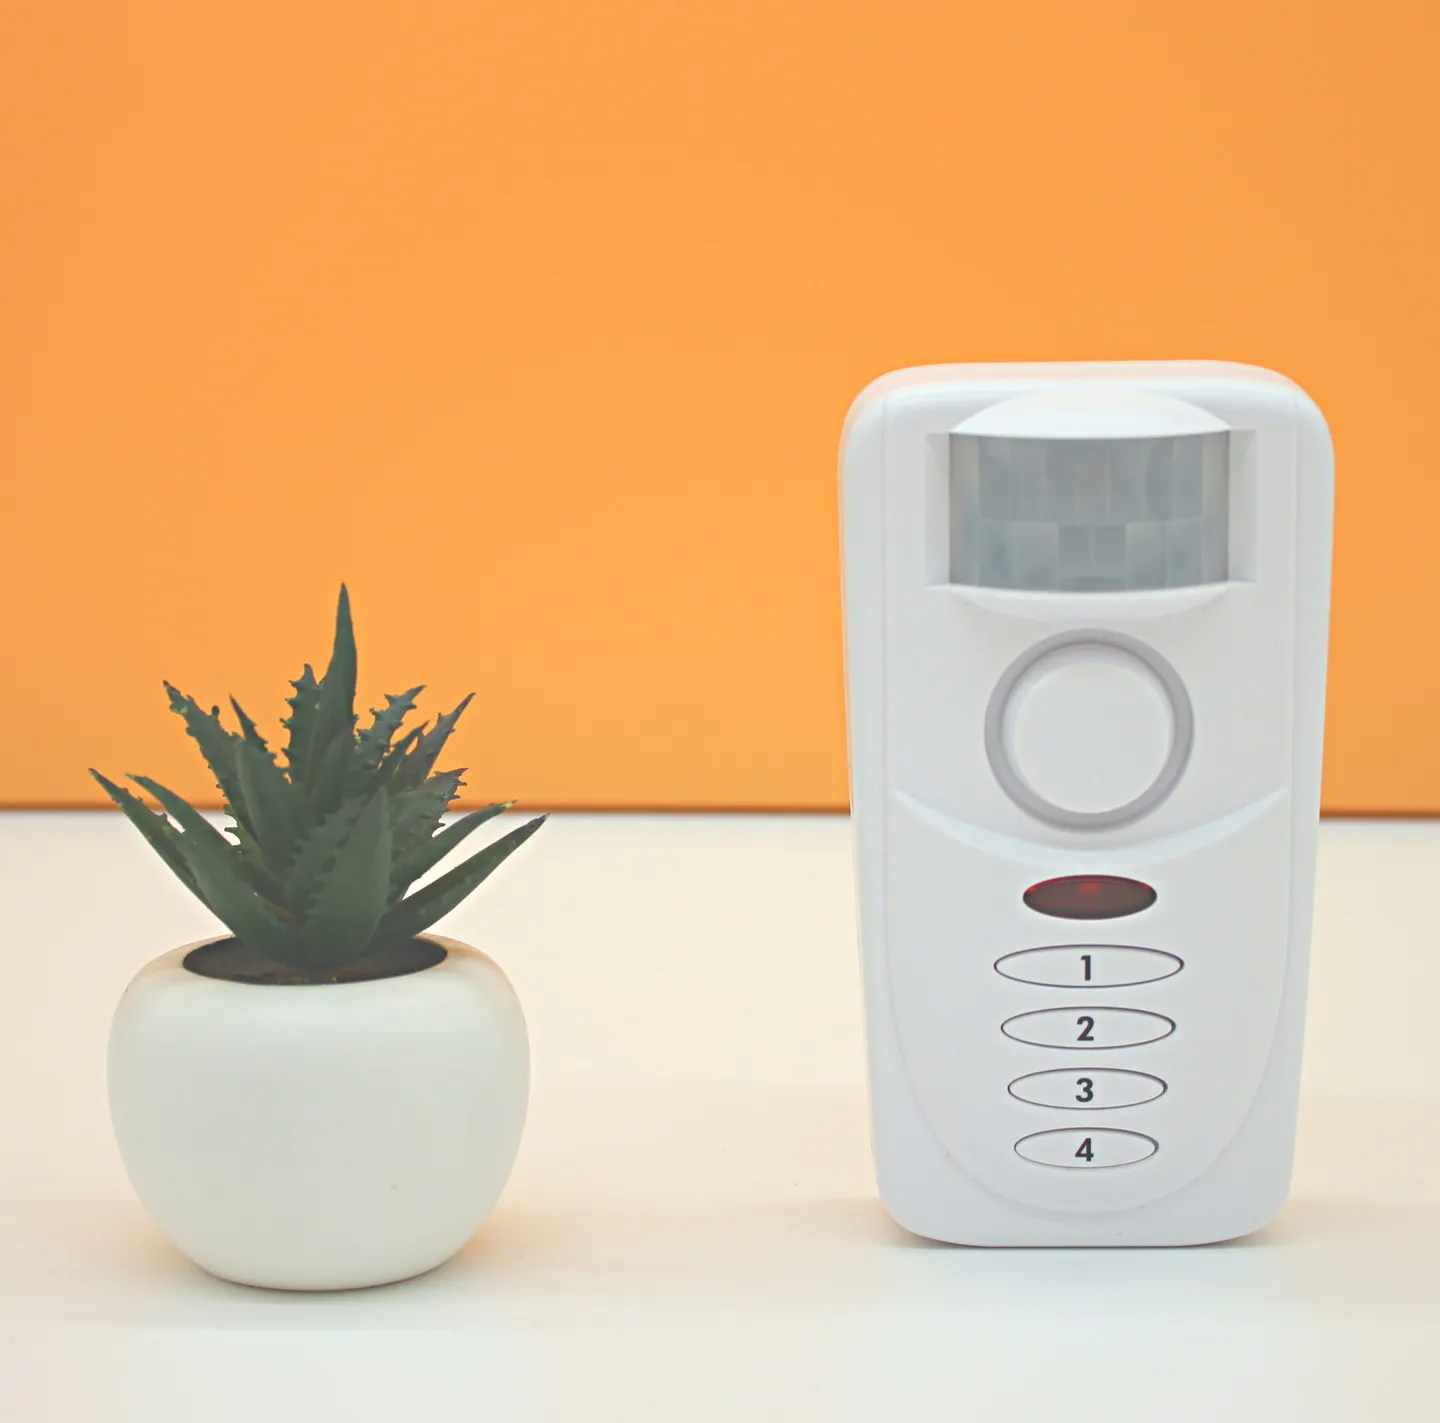 Alarmas y linternas - Alarma con detector de movimiento - Sabre – ¡una solución completa!